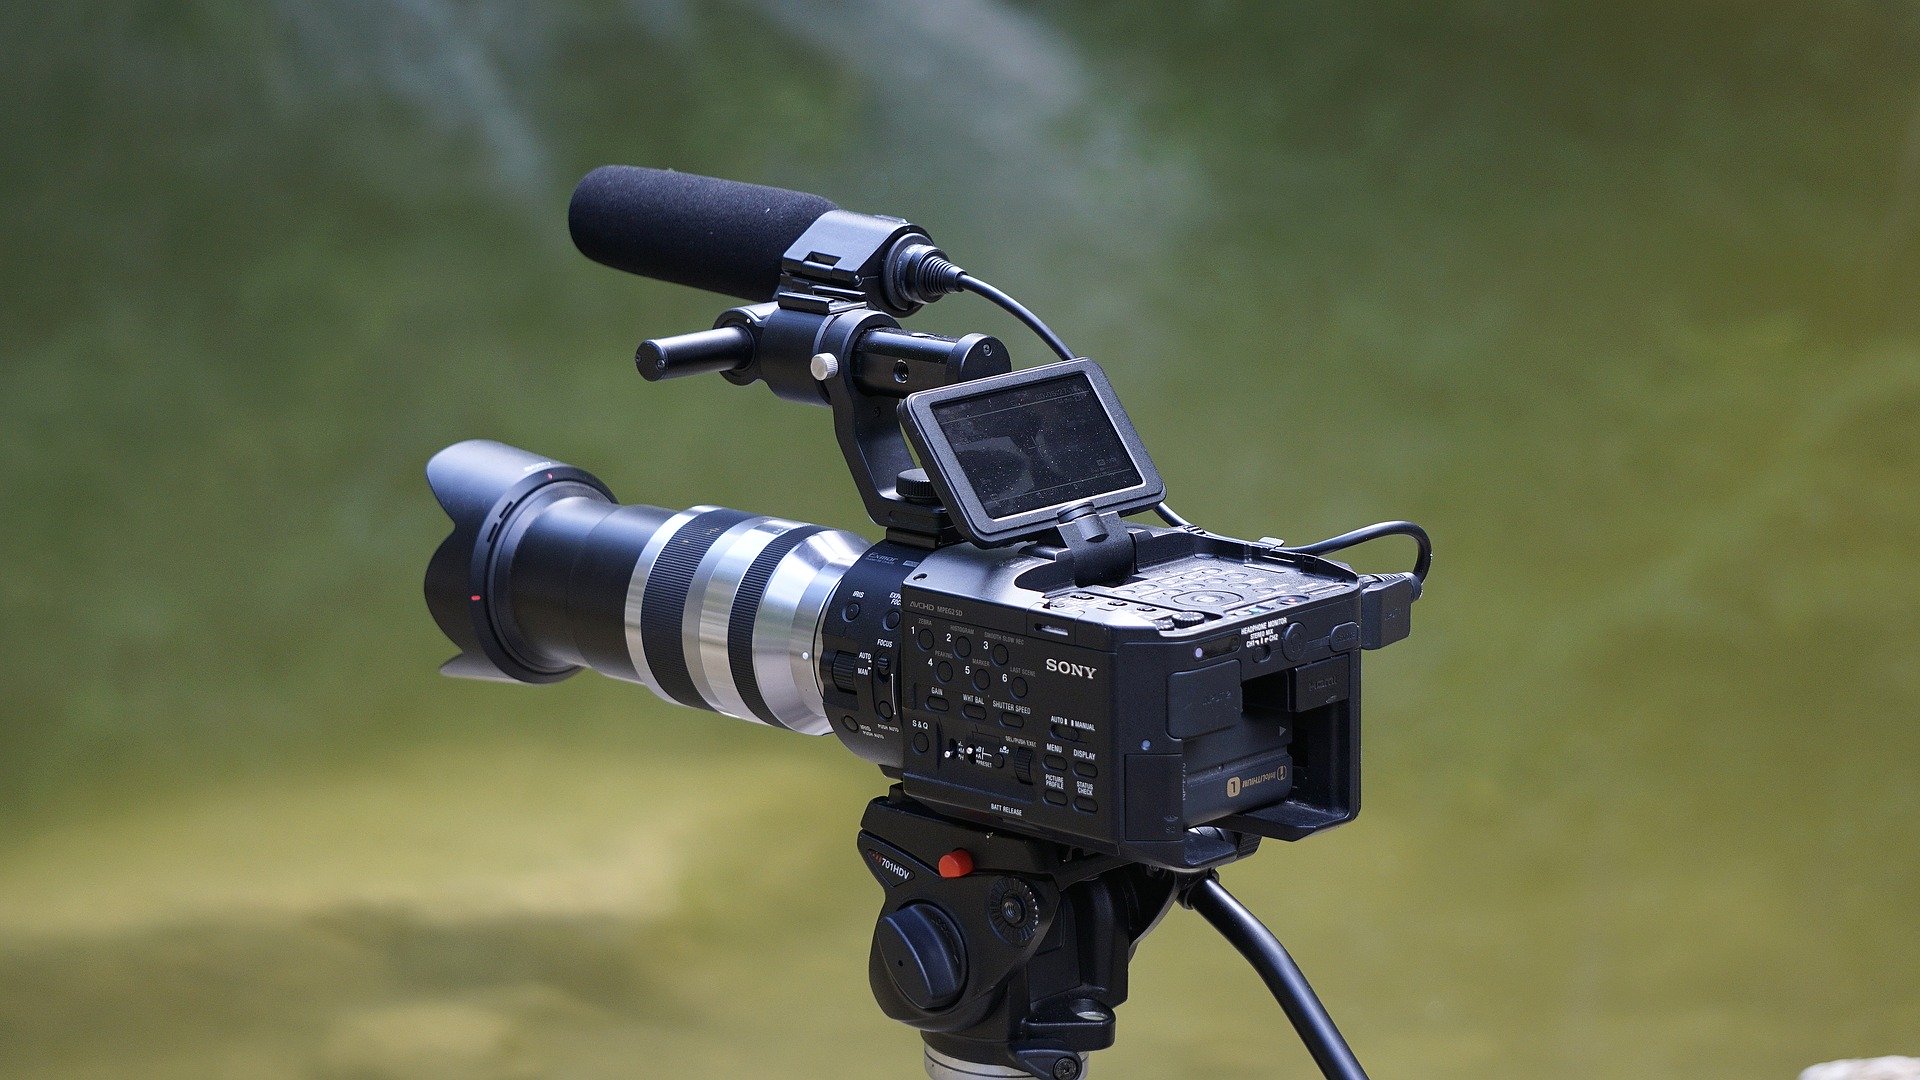 ソニー   4K   ビデオカメラ   Handycam   FDR-AX700   ブラック   光学ズーム12倍   1.0型 Exmor RS - 1